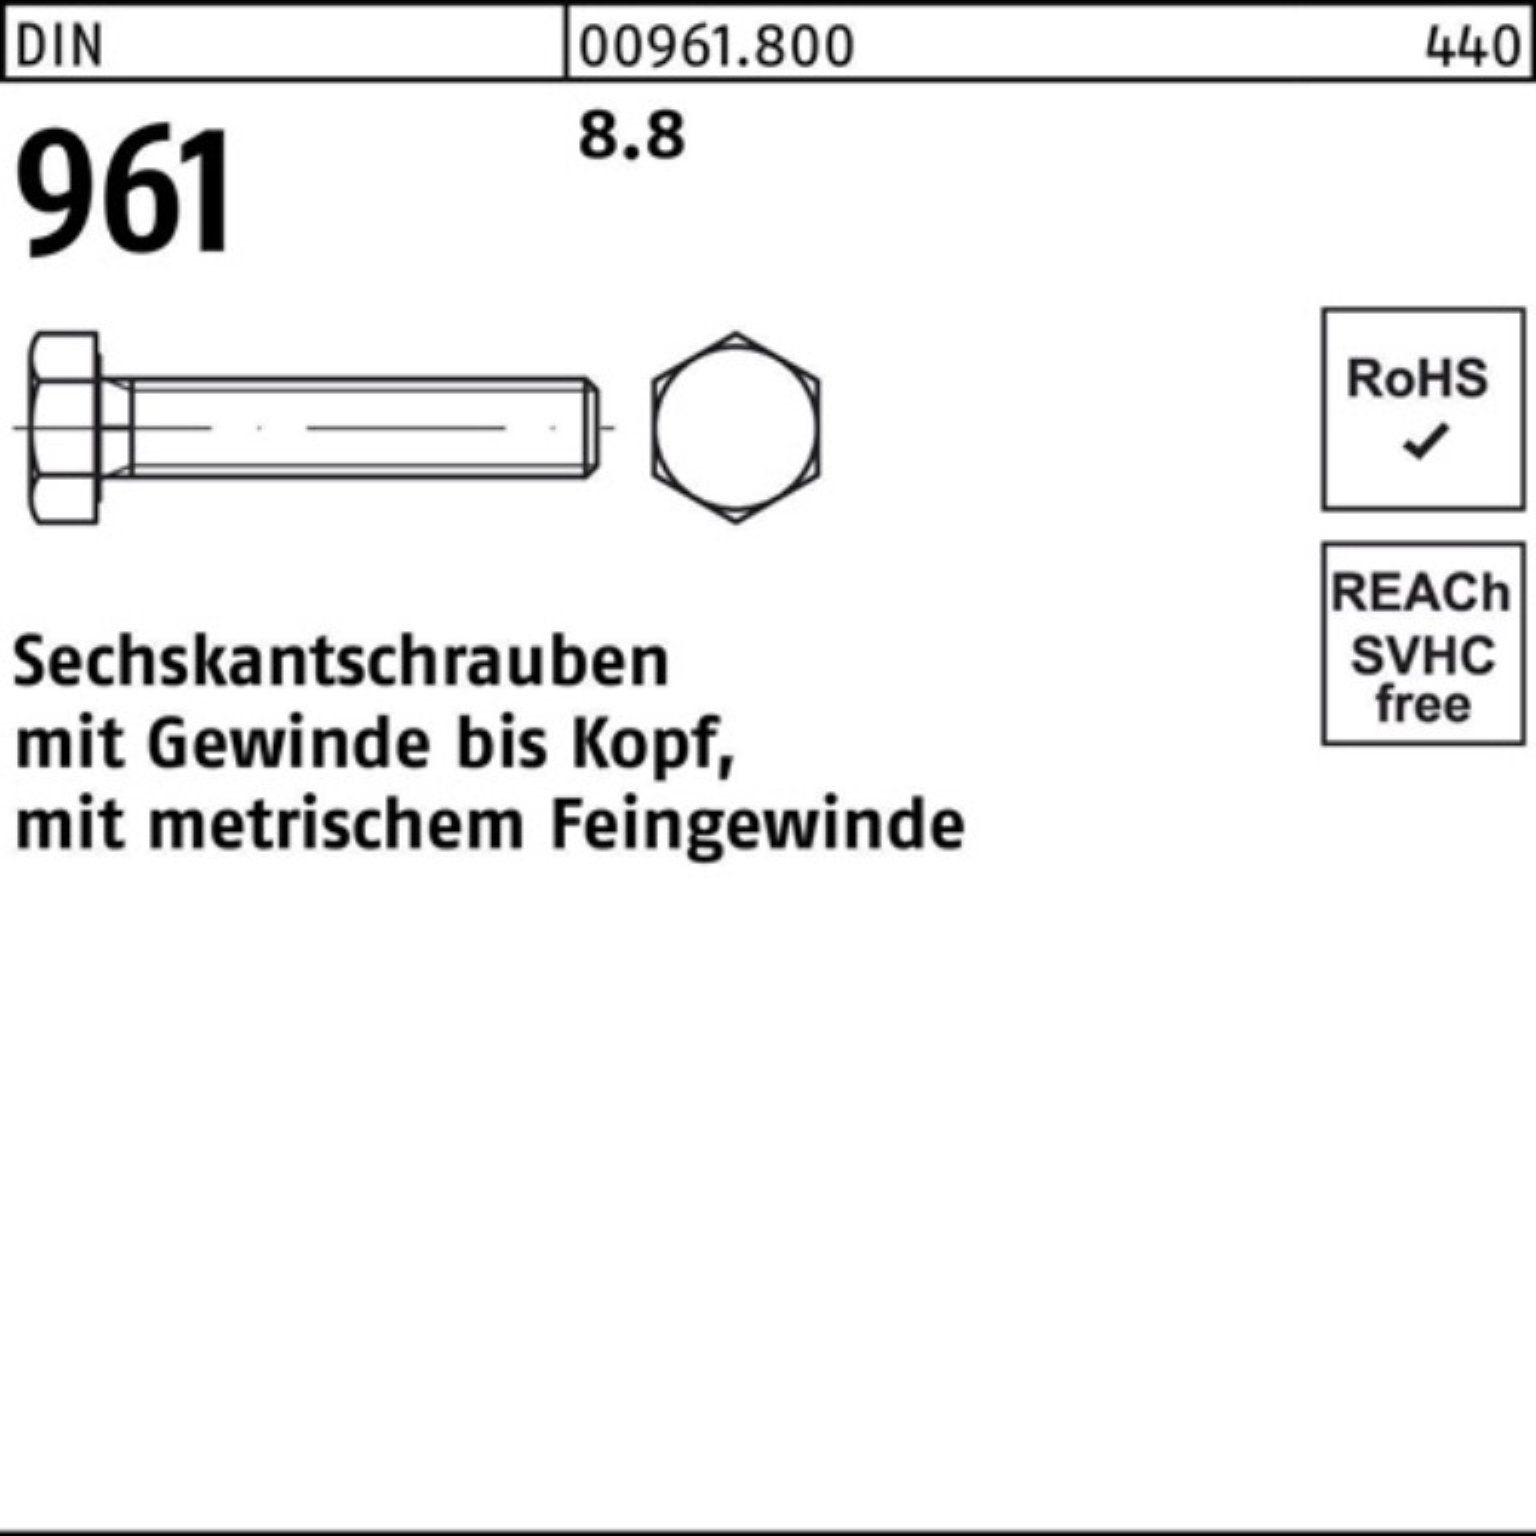 Abschlag Reyher Sechskantschraube 8.8 961 100er DIN 25 Pack M18x1,5x 80 Sechskantschraube VG Stück DIN